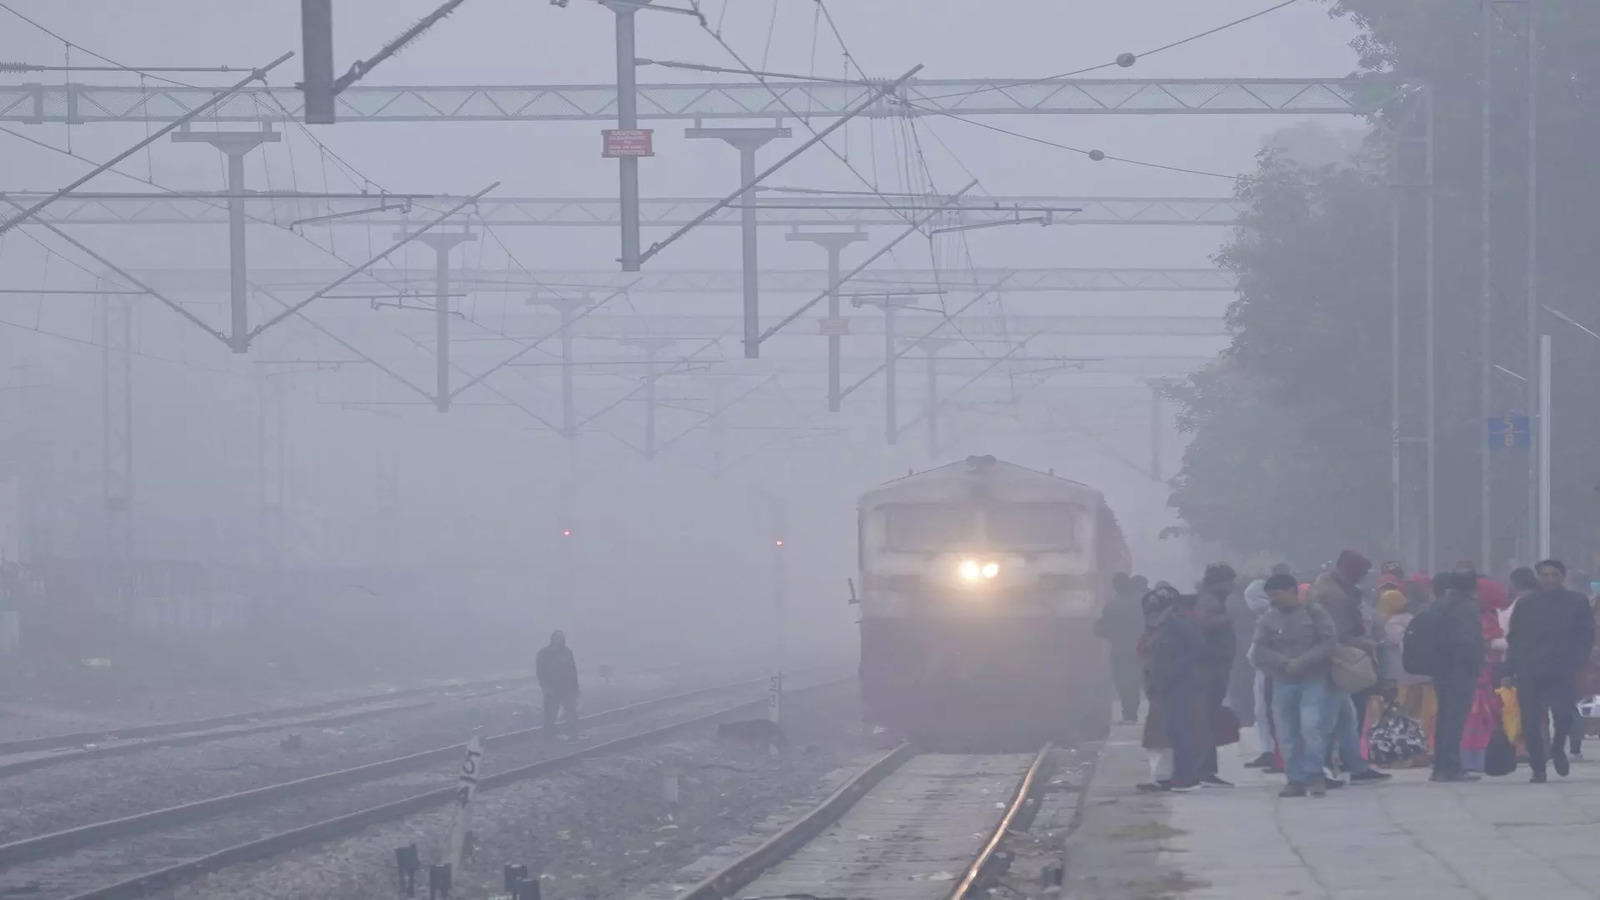 दिल्लीमा कुहिरोका कारण हवाई तथा रेल सेवा प्रभावित